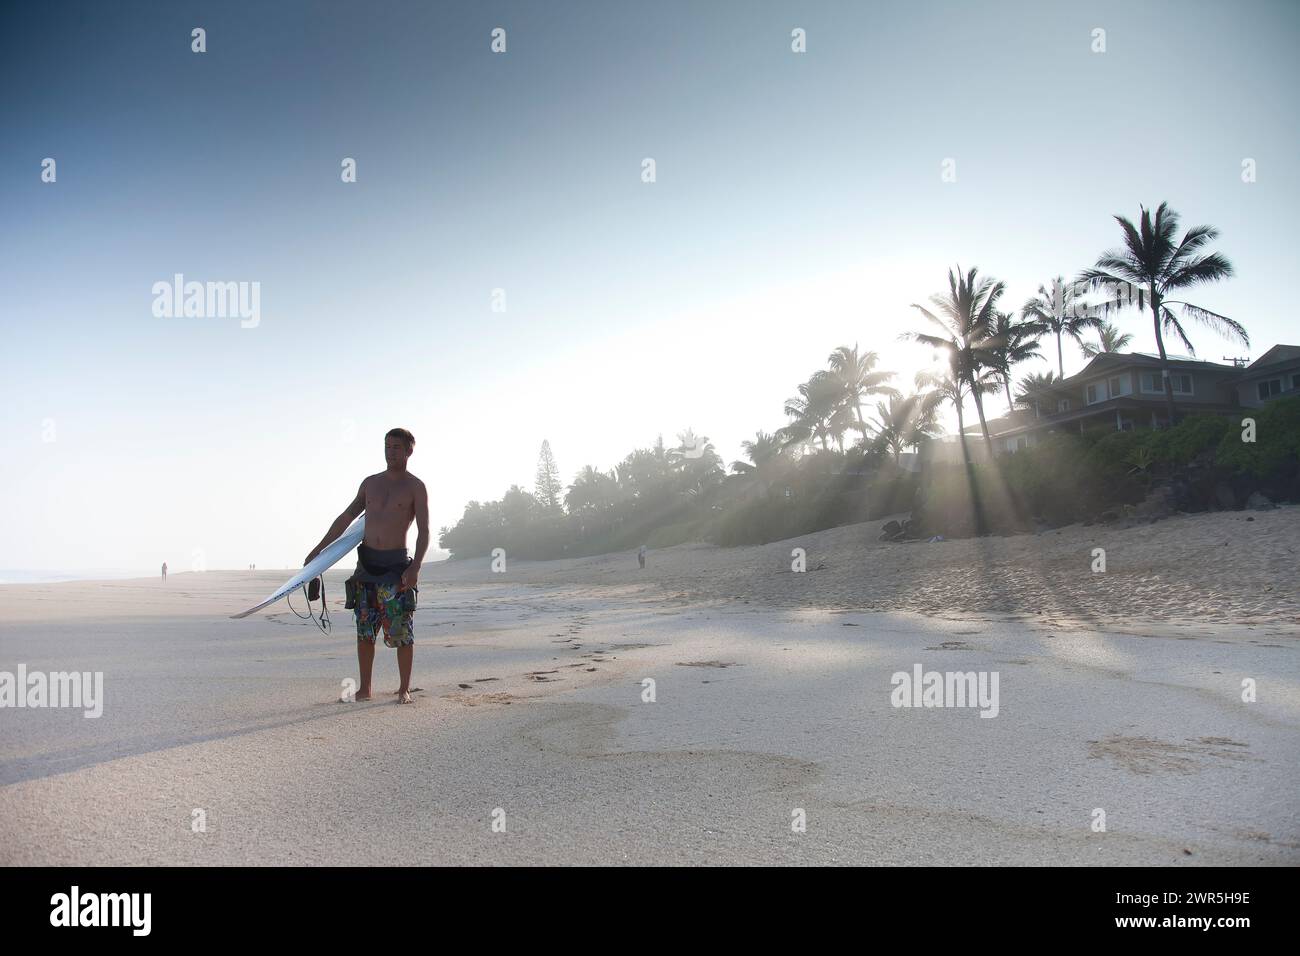 Ein junger Mann, der an einem verlassenen Strand steht und im Begriff ist, surfen zu gehen. North Shore, Oahu, Hawaii Stockfoto